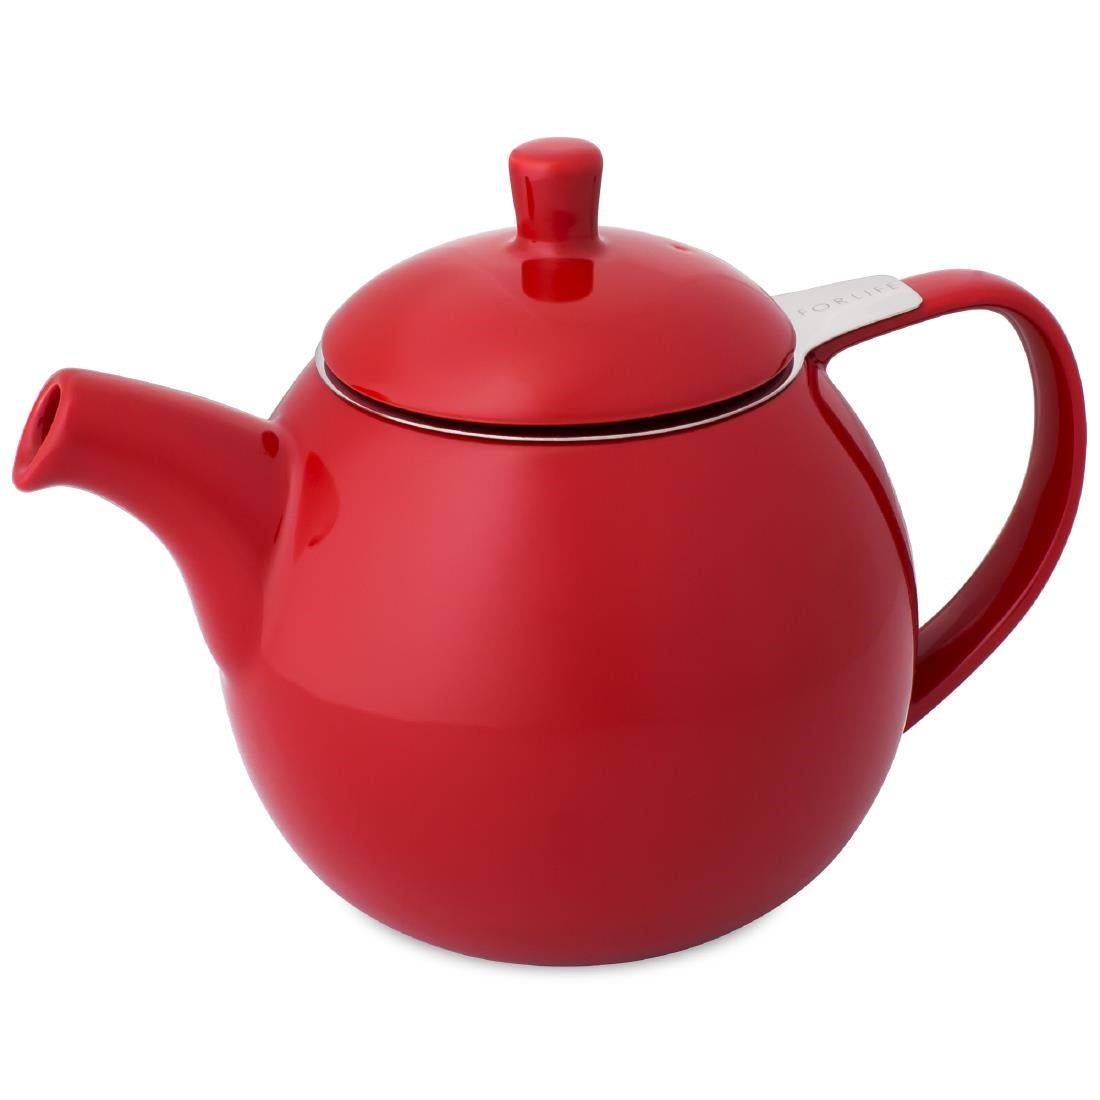 DX496 Forlife Red Curve Teapot 45oz